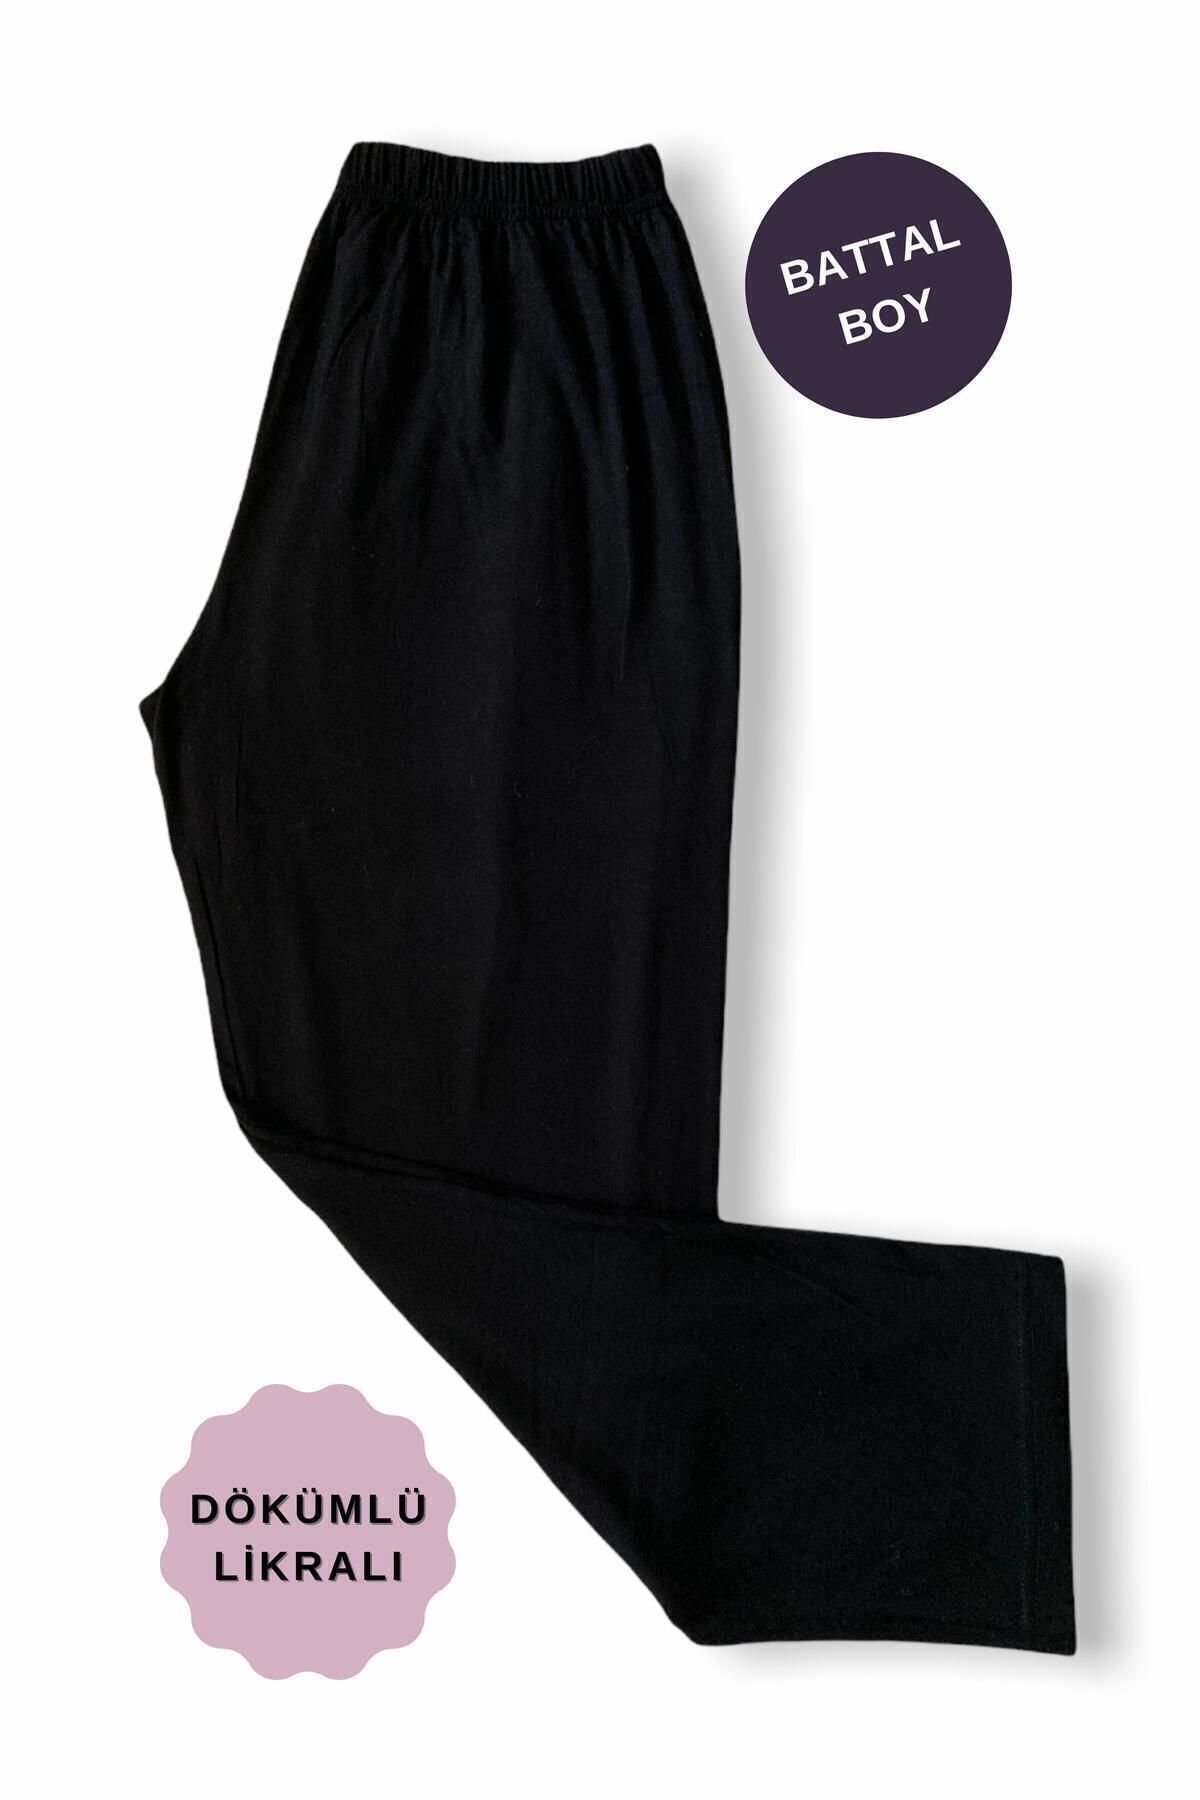 ÇizYaz Tasarım Siyah Viskon Penye Pantolon (MEVSİMLİK)